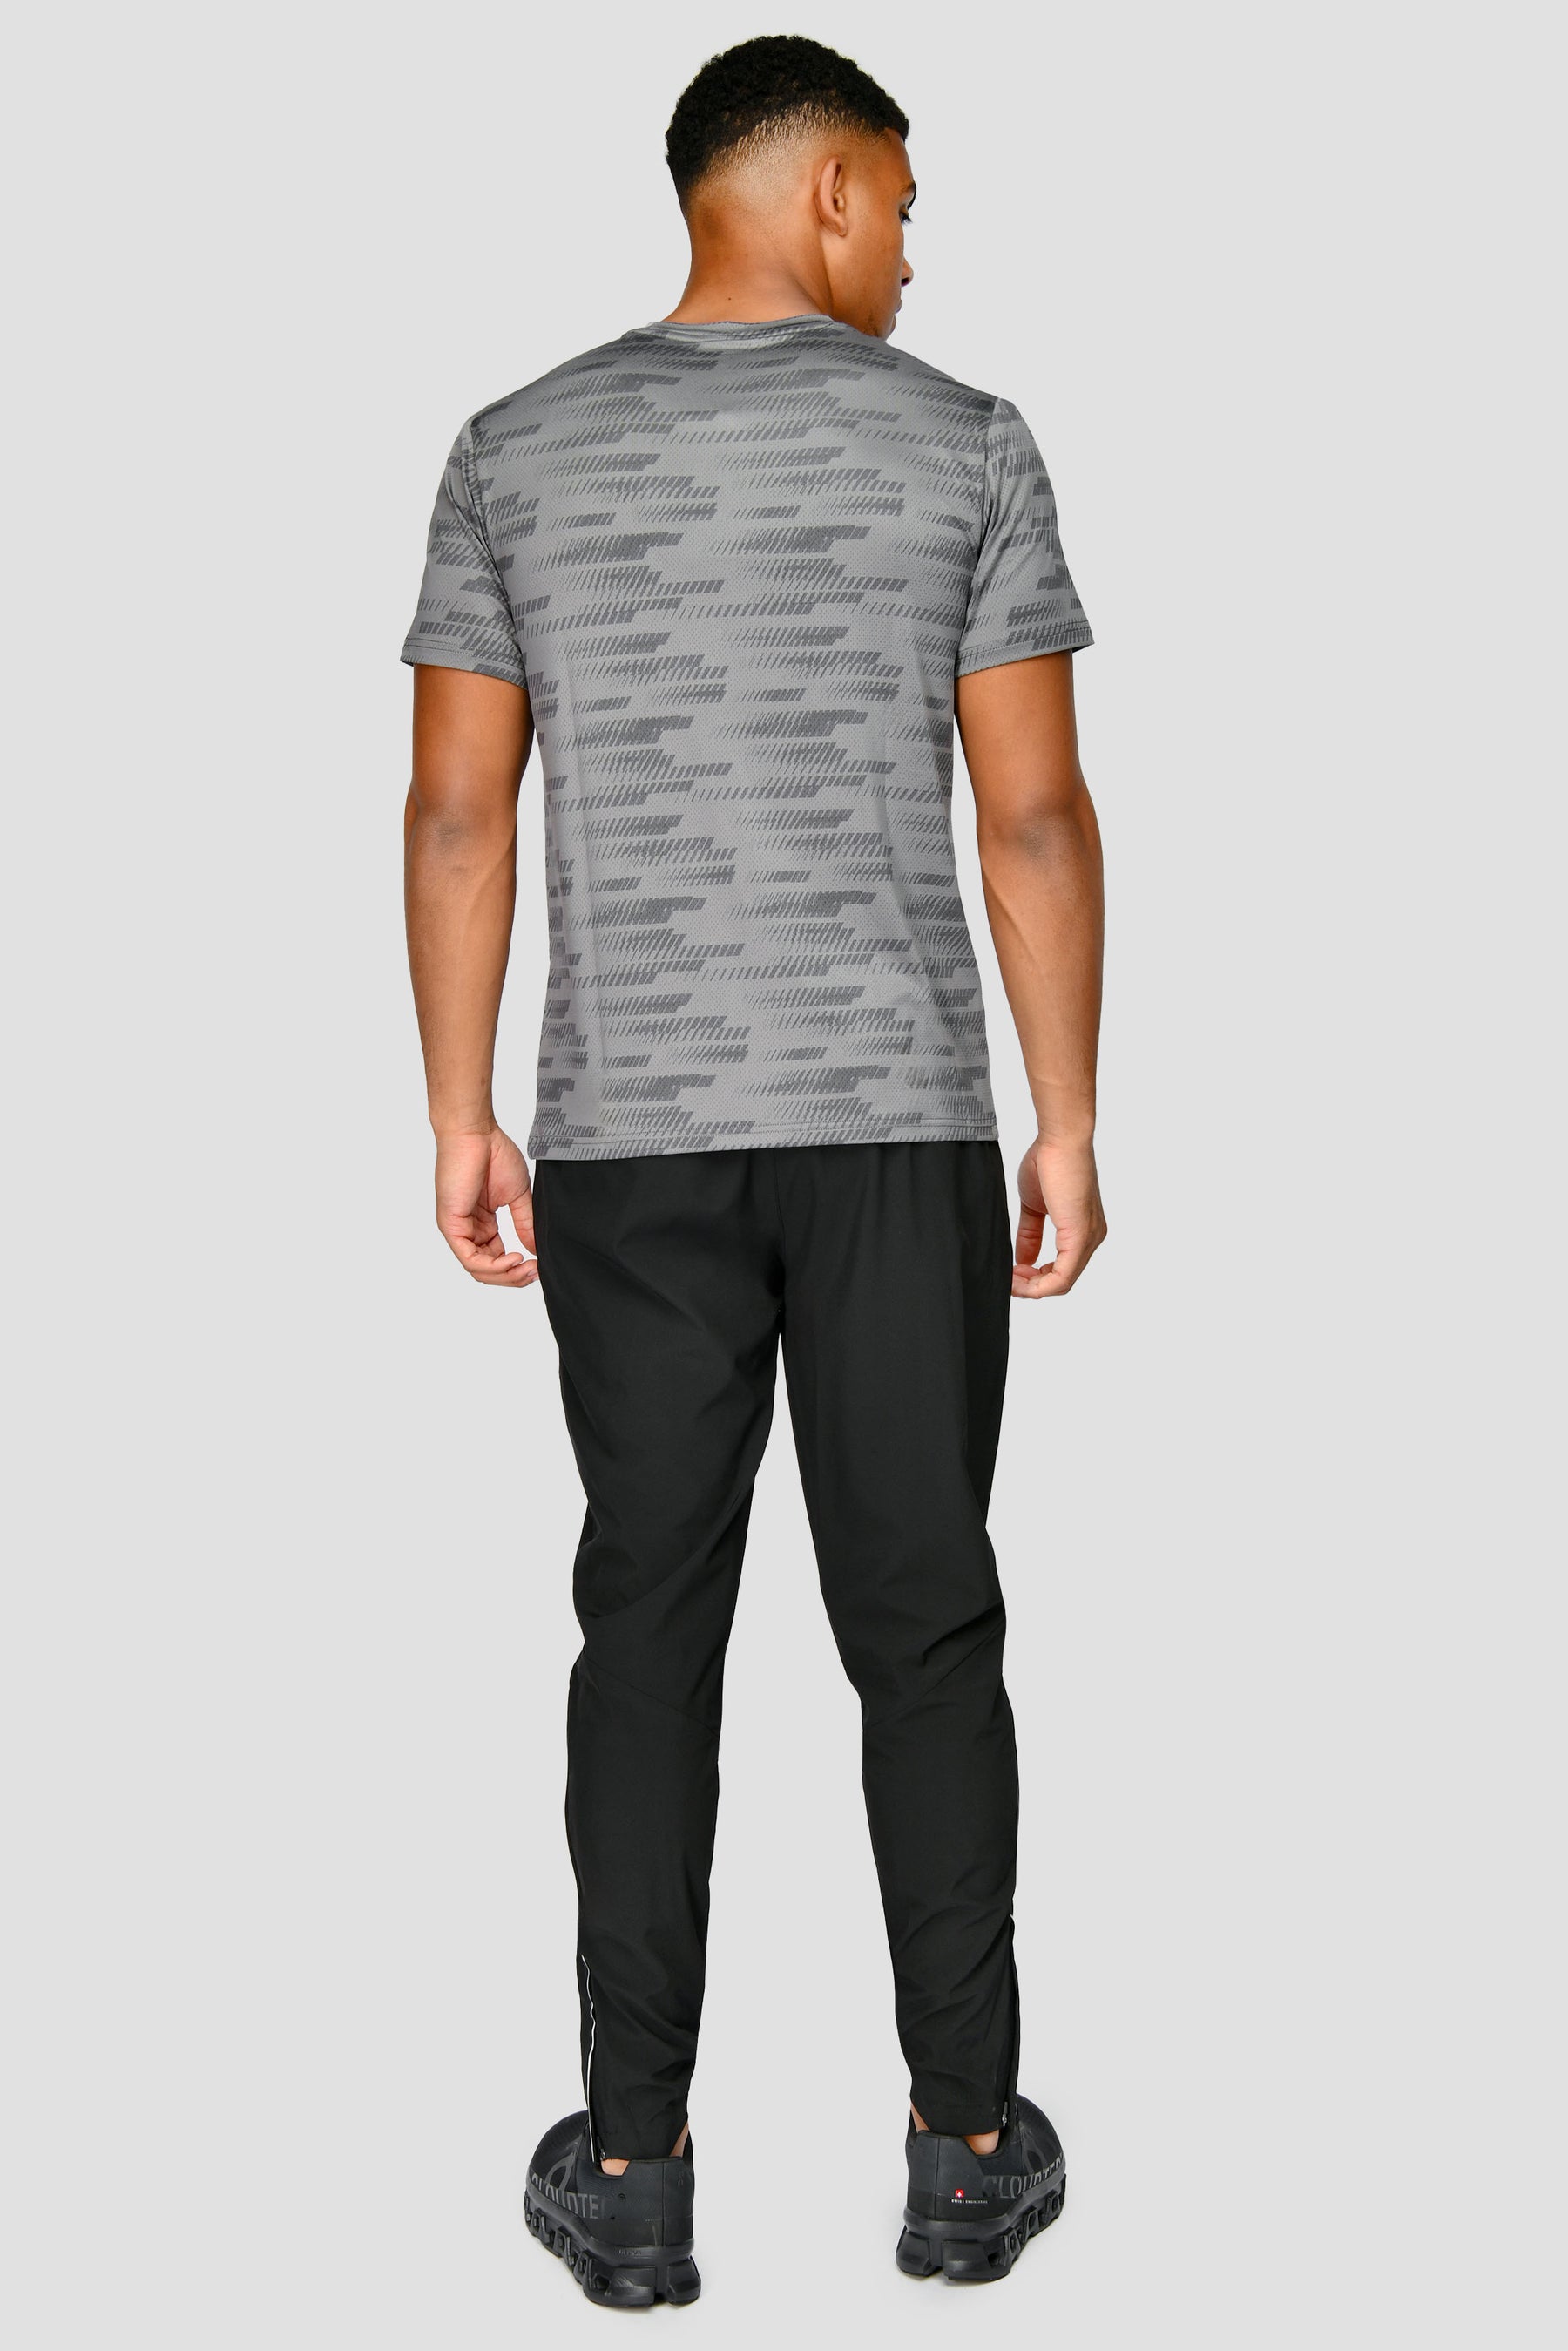 Hanes Explorer Unisex L/S Graphic T-Shirt Concrete Grey